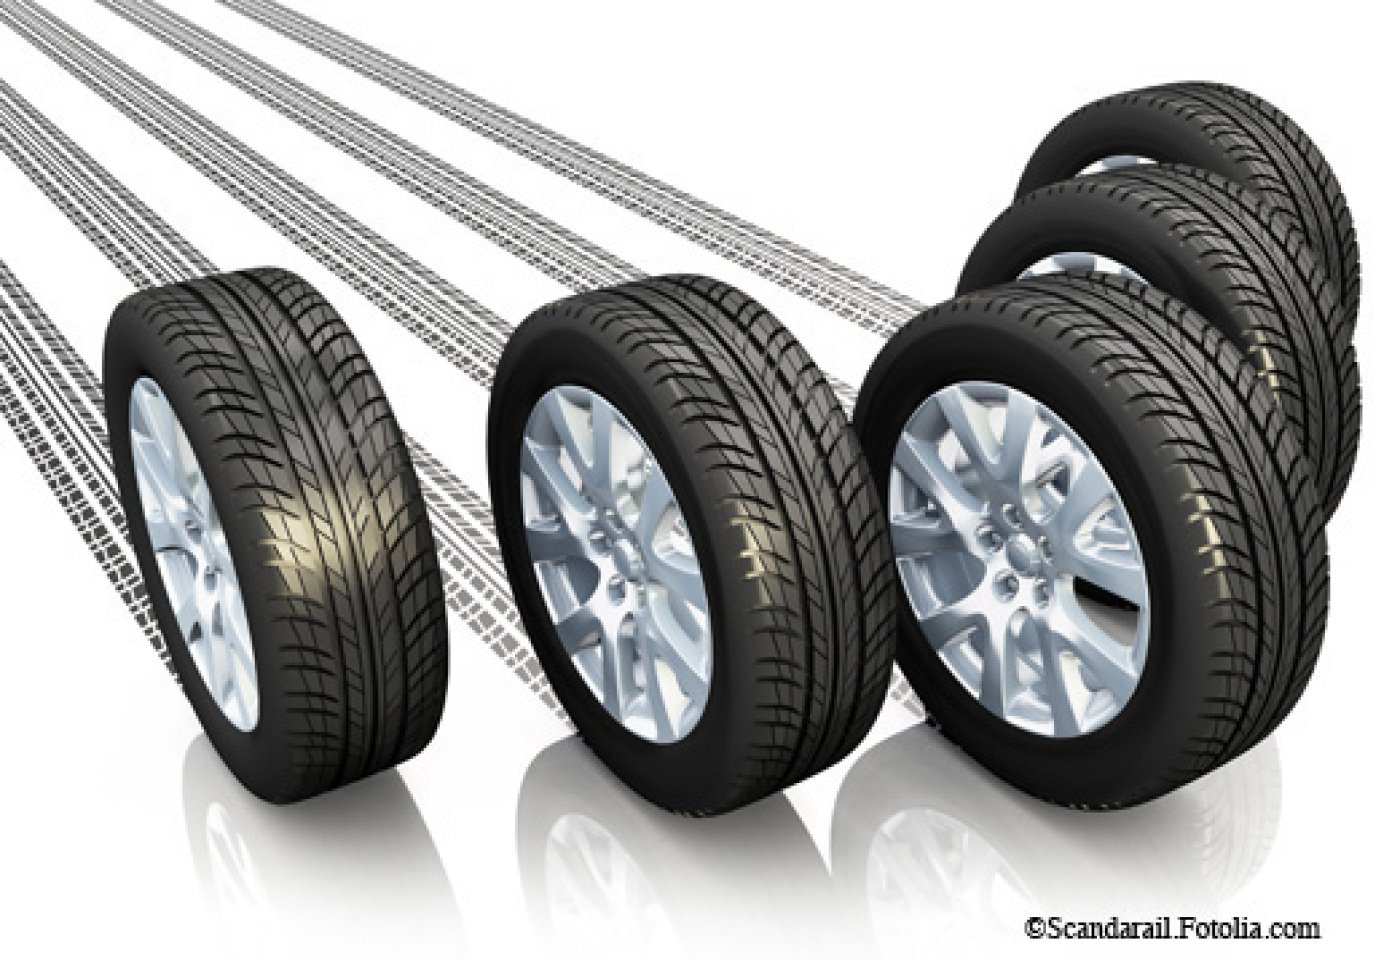 Obtenez les bons pneus : Voici le guide sur la façon de choisir les bons pneus pour votre voiture